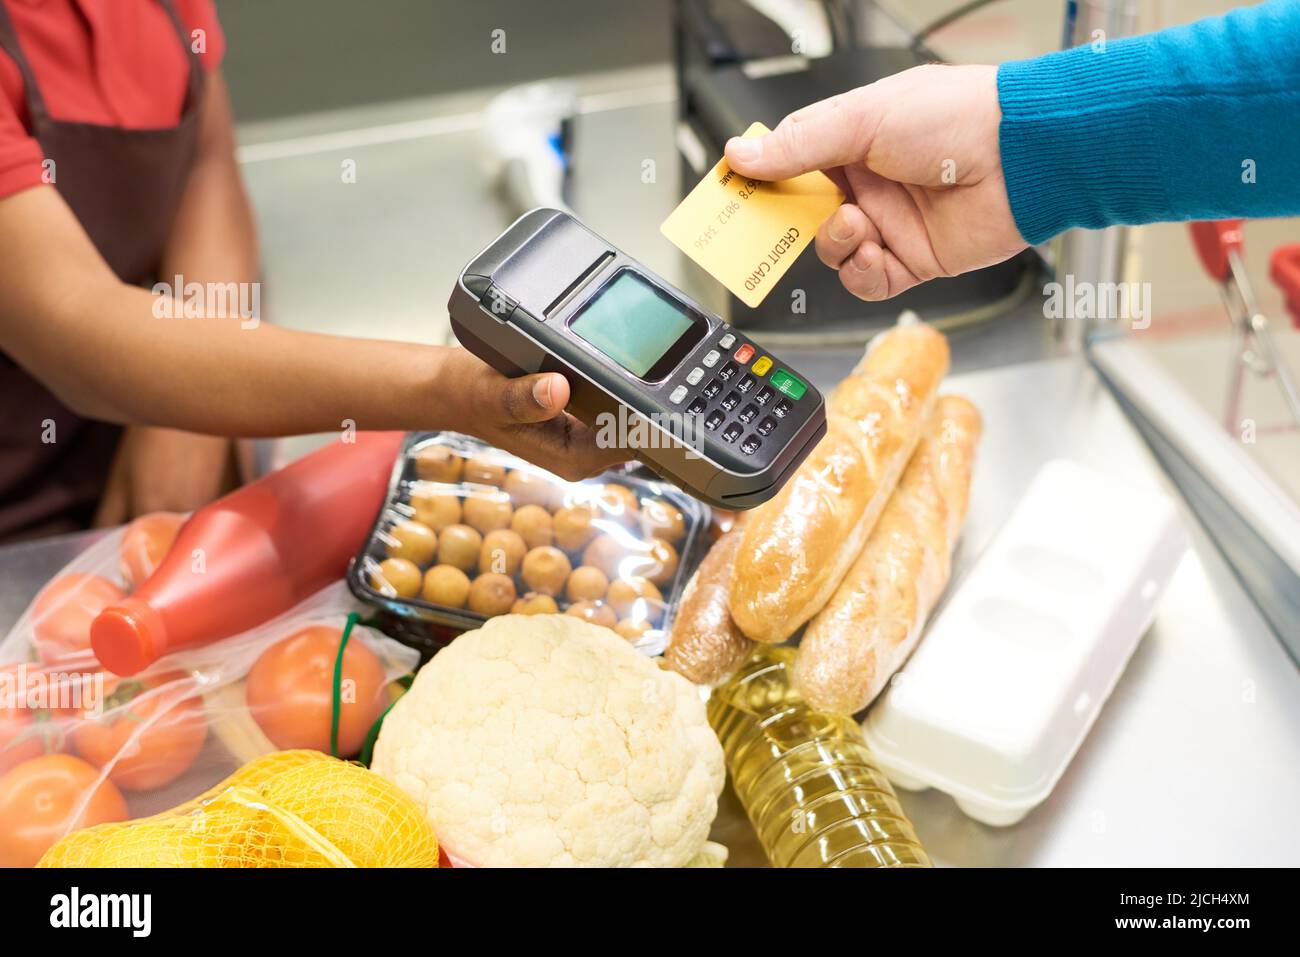 Männliche Verbraucher, die für Lebensmittelprodukte per Kreditkarte bezahlen, während sie sie über das Zahlungsterminal in der Hand der Verkäuferin am Schalter halten Stockfoto